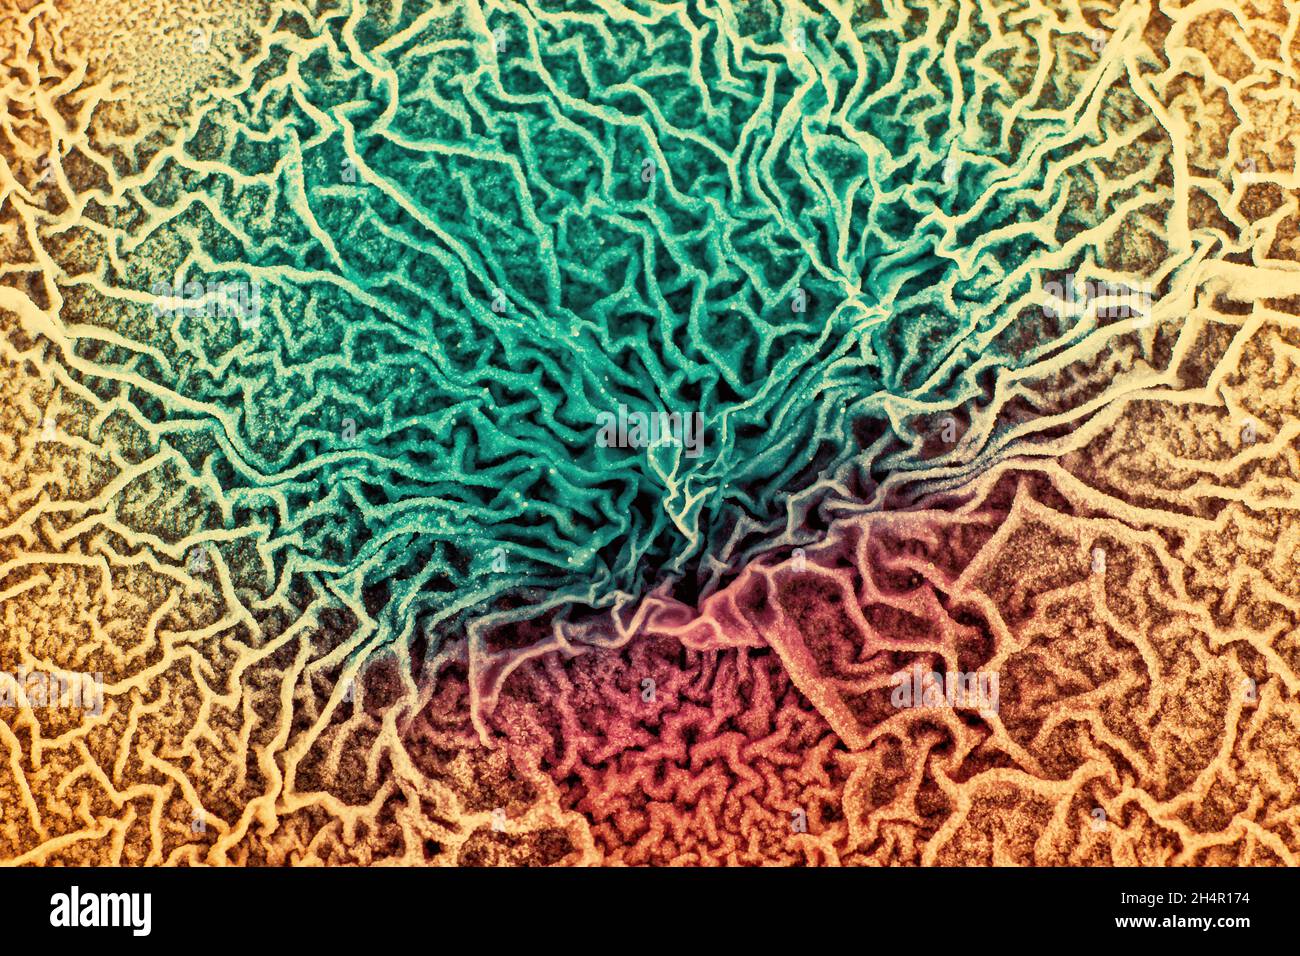 Le tissu d'un organisme biologique est affecté par deux types de cellules cancéreuses. Microscopie électronique. Image conceptuelle des processus de mutation sous l'inf Banque D'Images